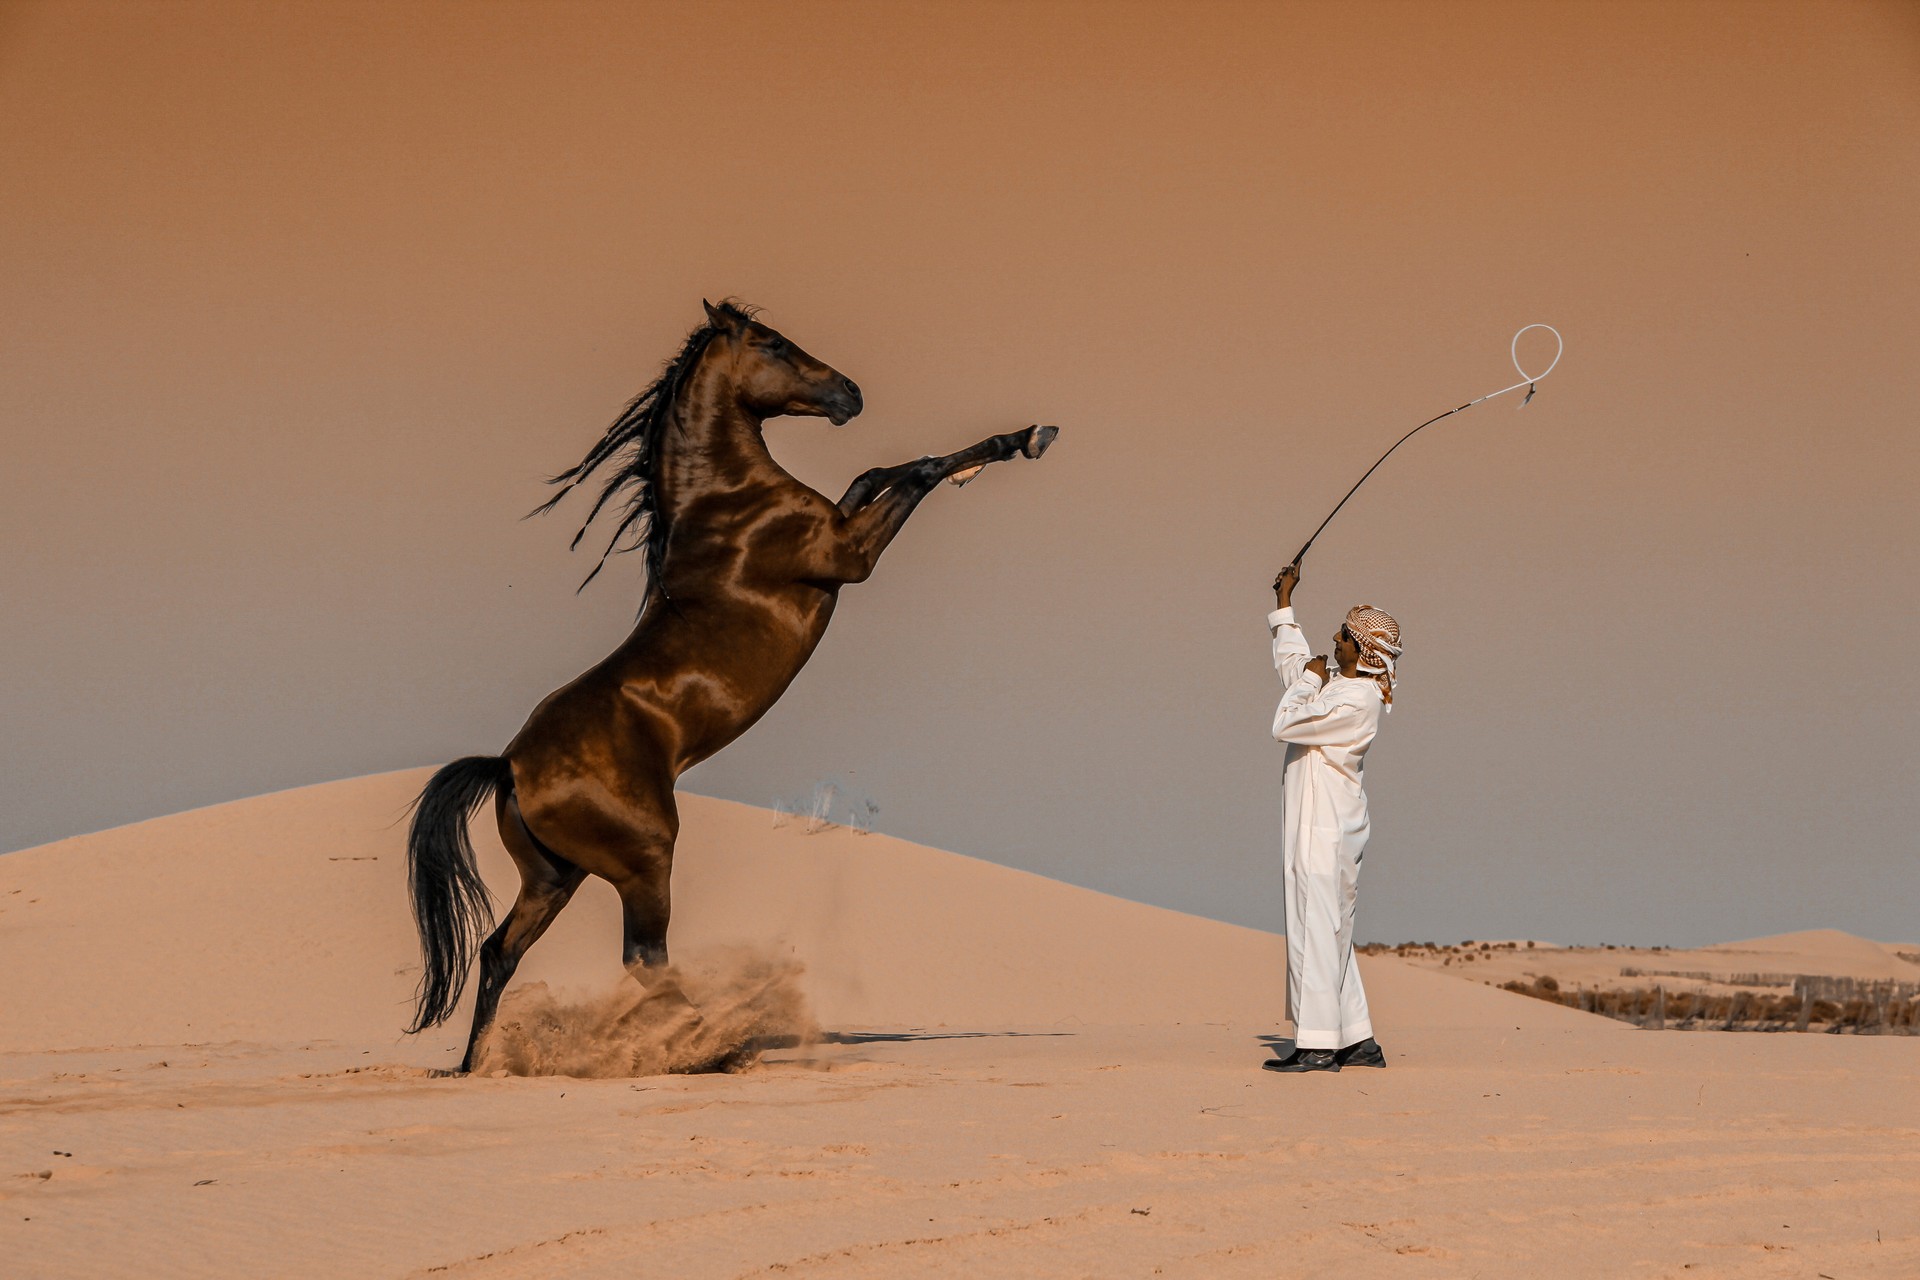 Лауреат категории Национальная премия, Саудовская Аравия, 2020. Дрессировка коня в Абу-Даби. Автор Аббас Алкхамис